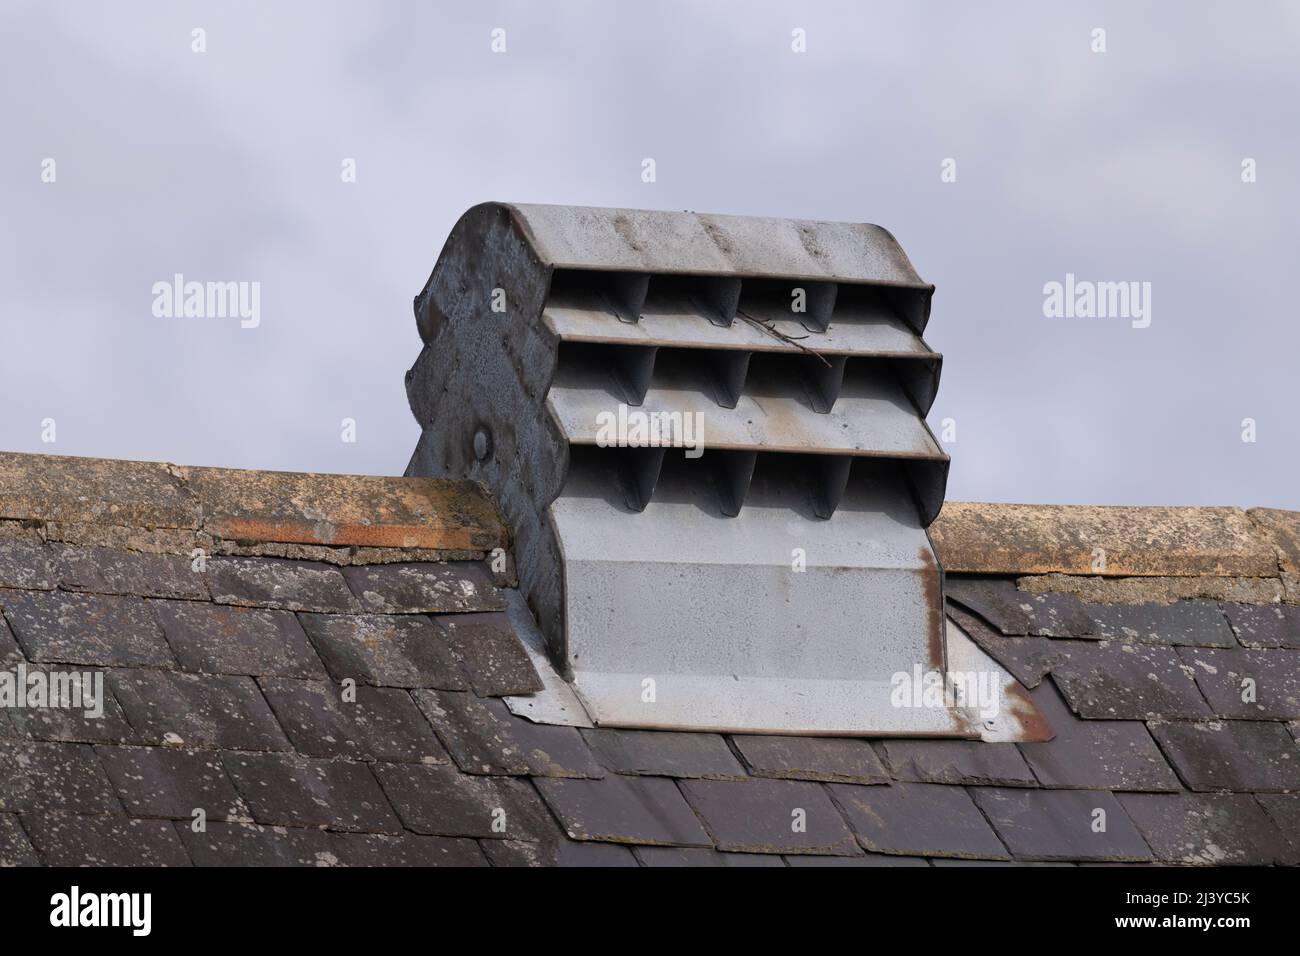 Un aérateur de toit en métal galvanisé sur la crête d'un toit en tuiles de ardoise Banque D'Images